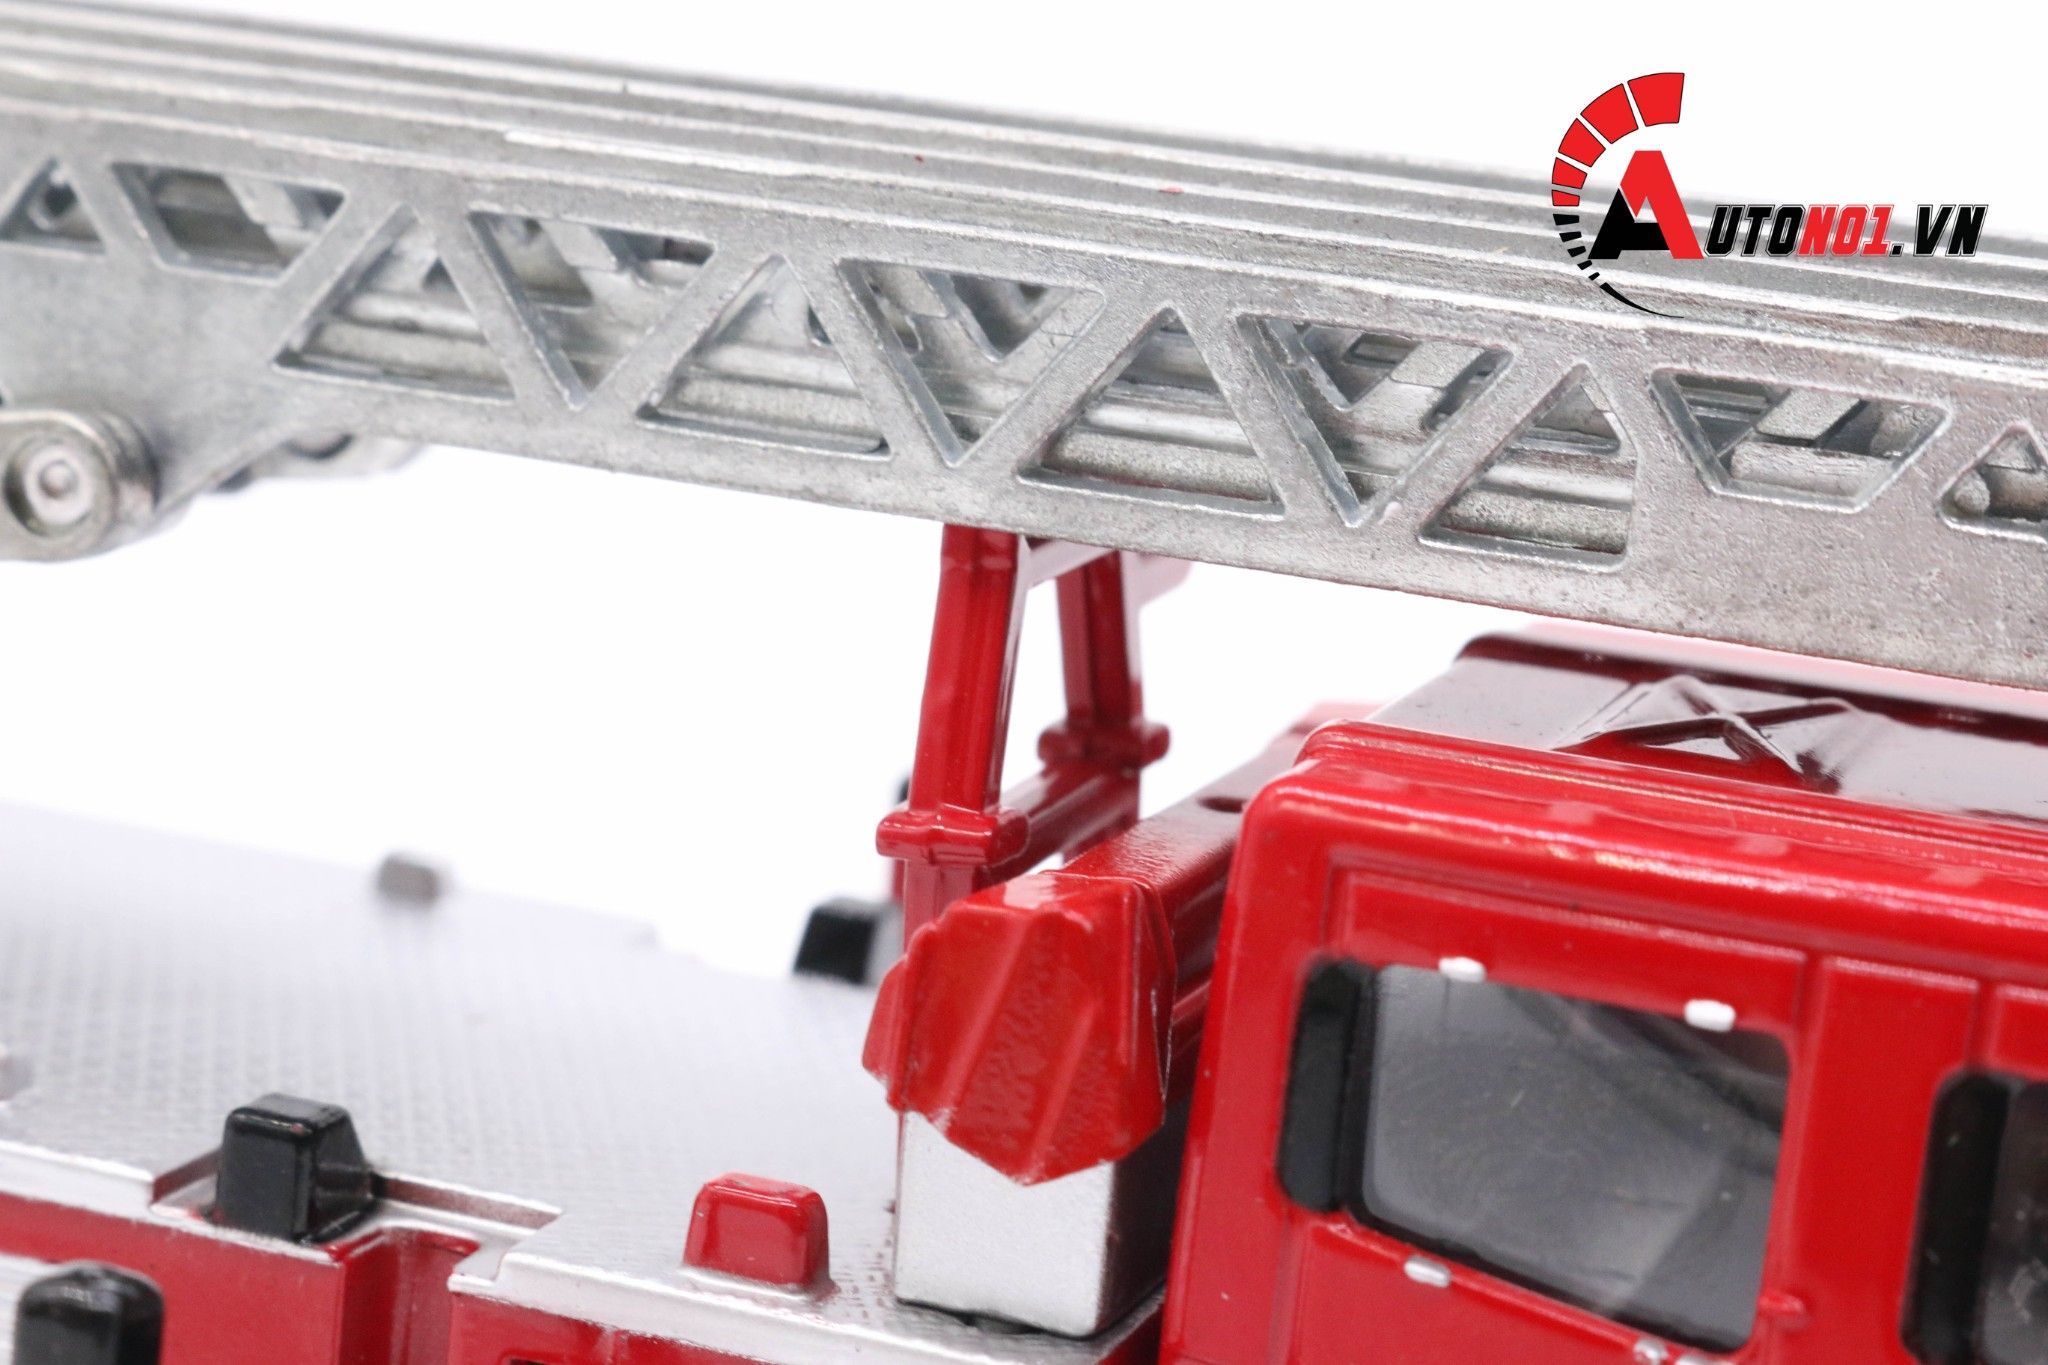  Mô hình xe thang cứu hỏa có thang bằng kim loại tỉ lệ 1:50 KDW Kaidiwei 625012 1171 